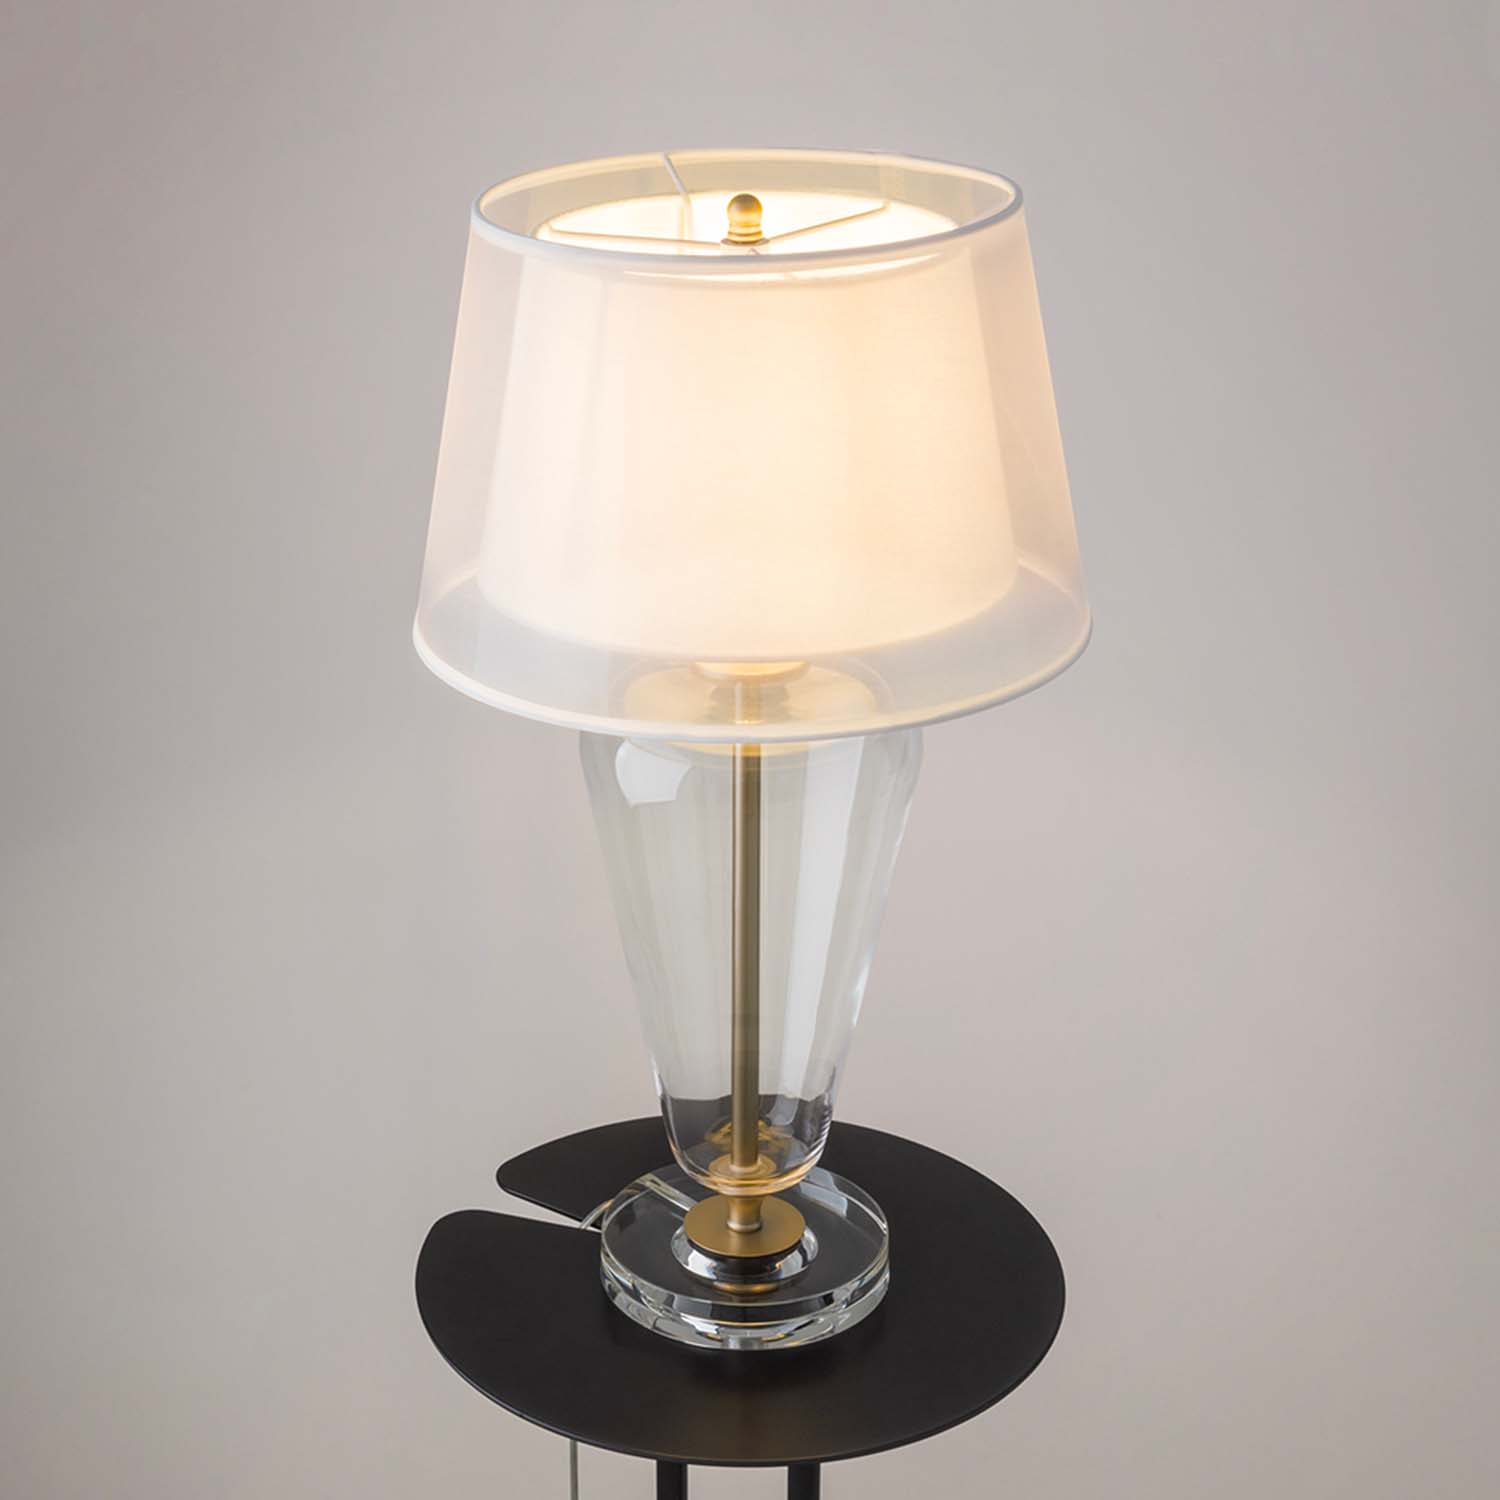 TABLE VERRE - Lampe à poser en verre vintage, abat-jour en tissu